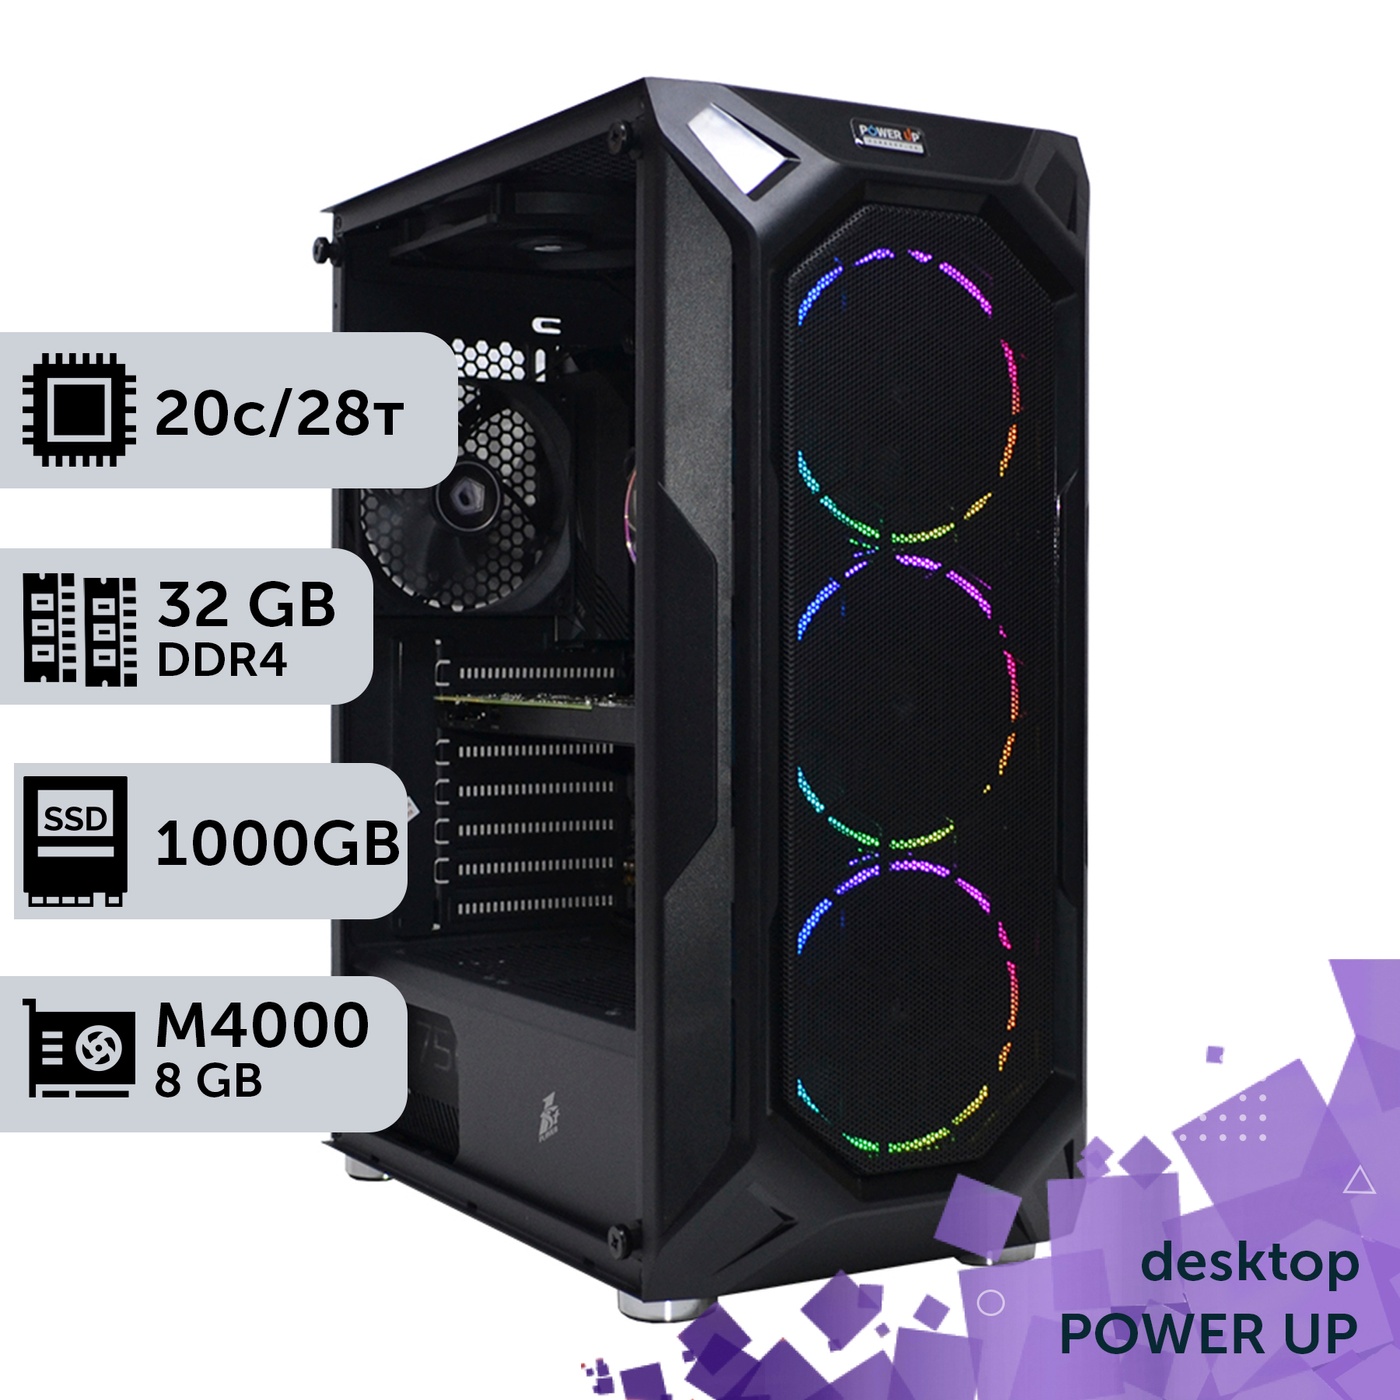 Робоча станція PowerUp Desktop #309 Core i7 14700K/32 GB/SSD 1TB/NVIDIA Quadro M4000 8GB